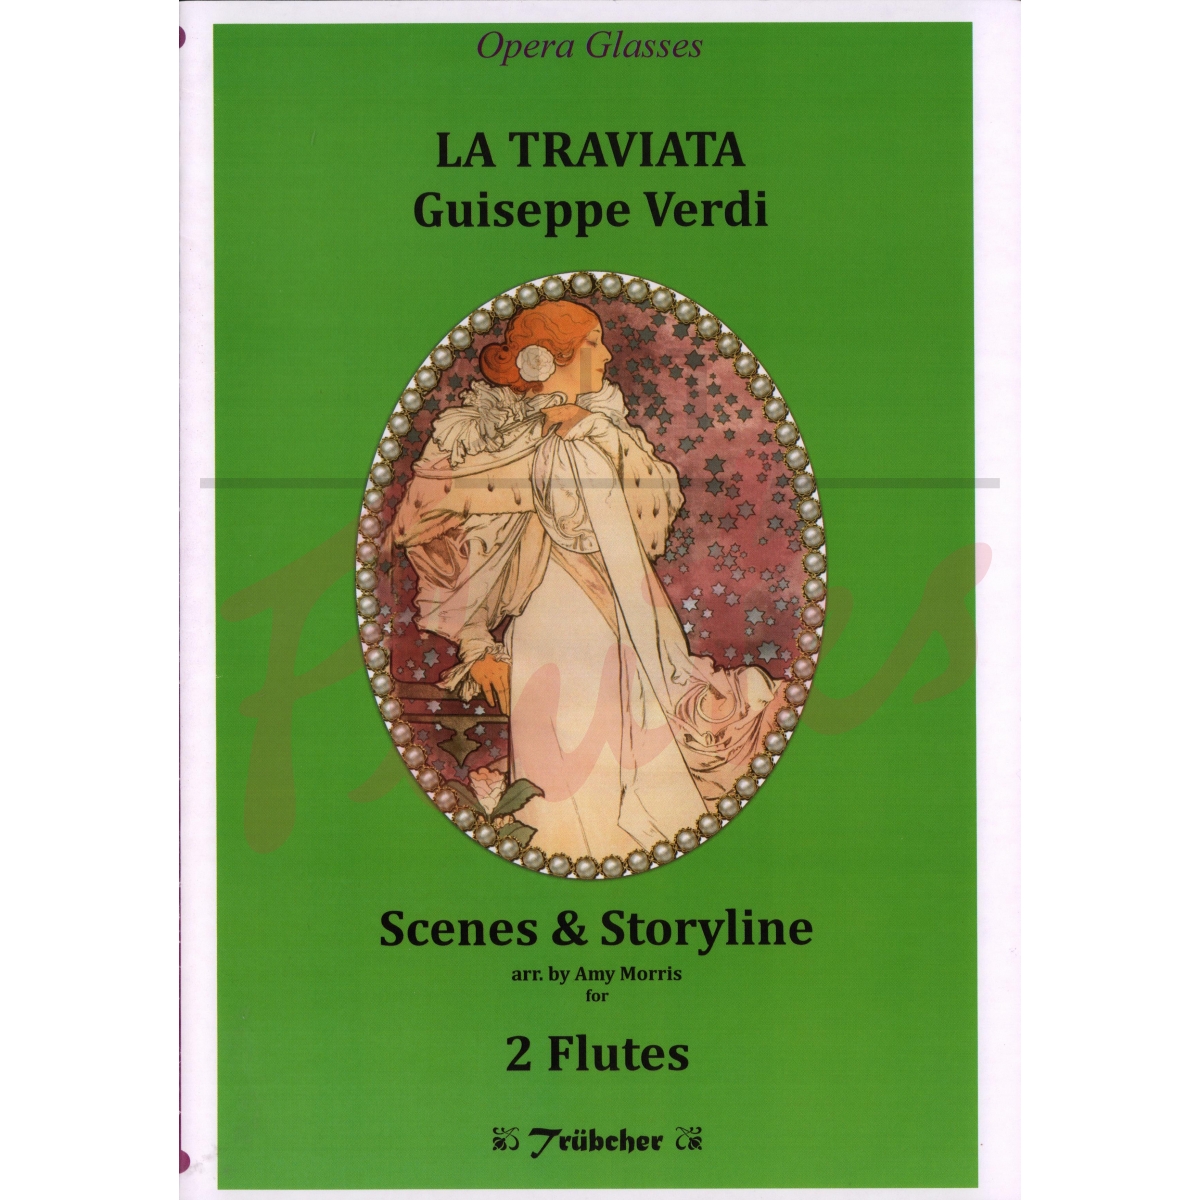 Five Scenes from La Traviata arranged for 2 flutes